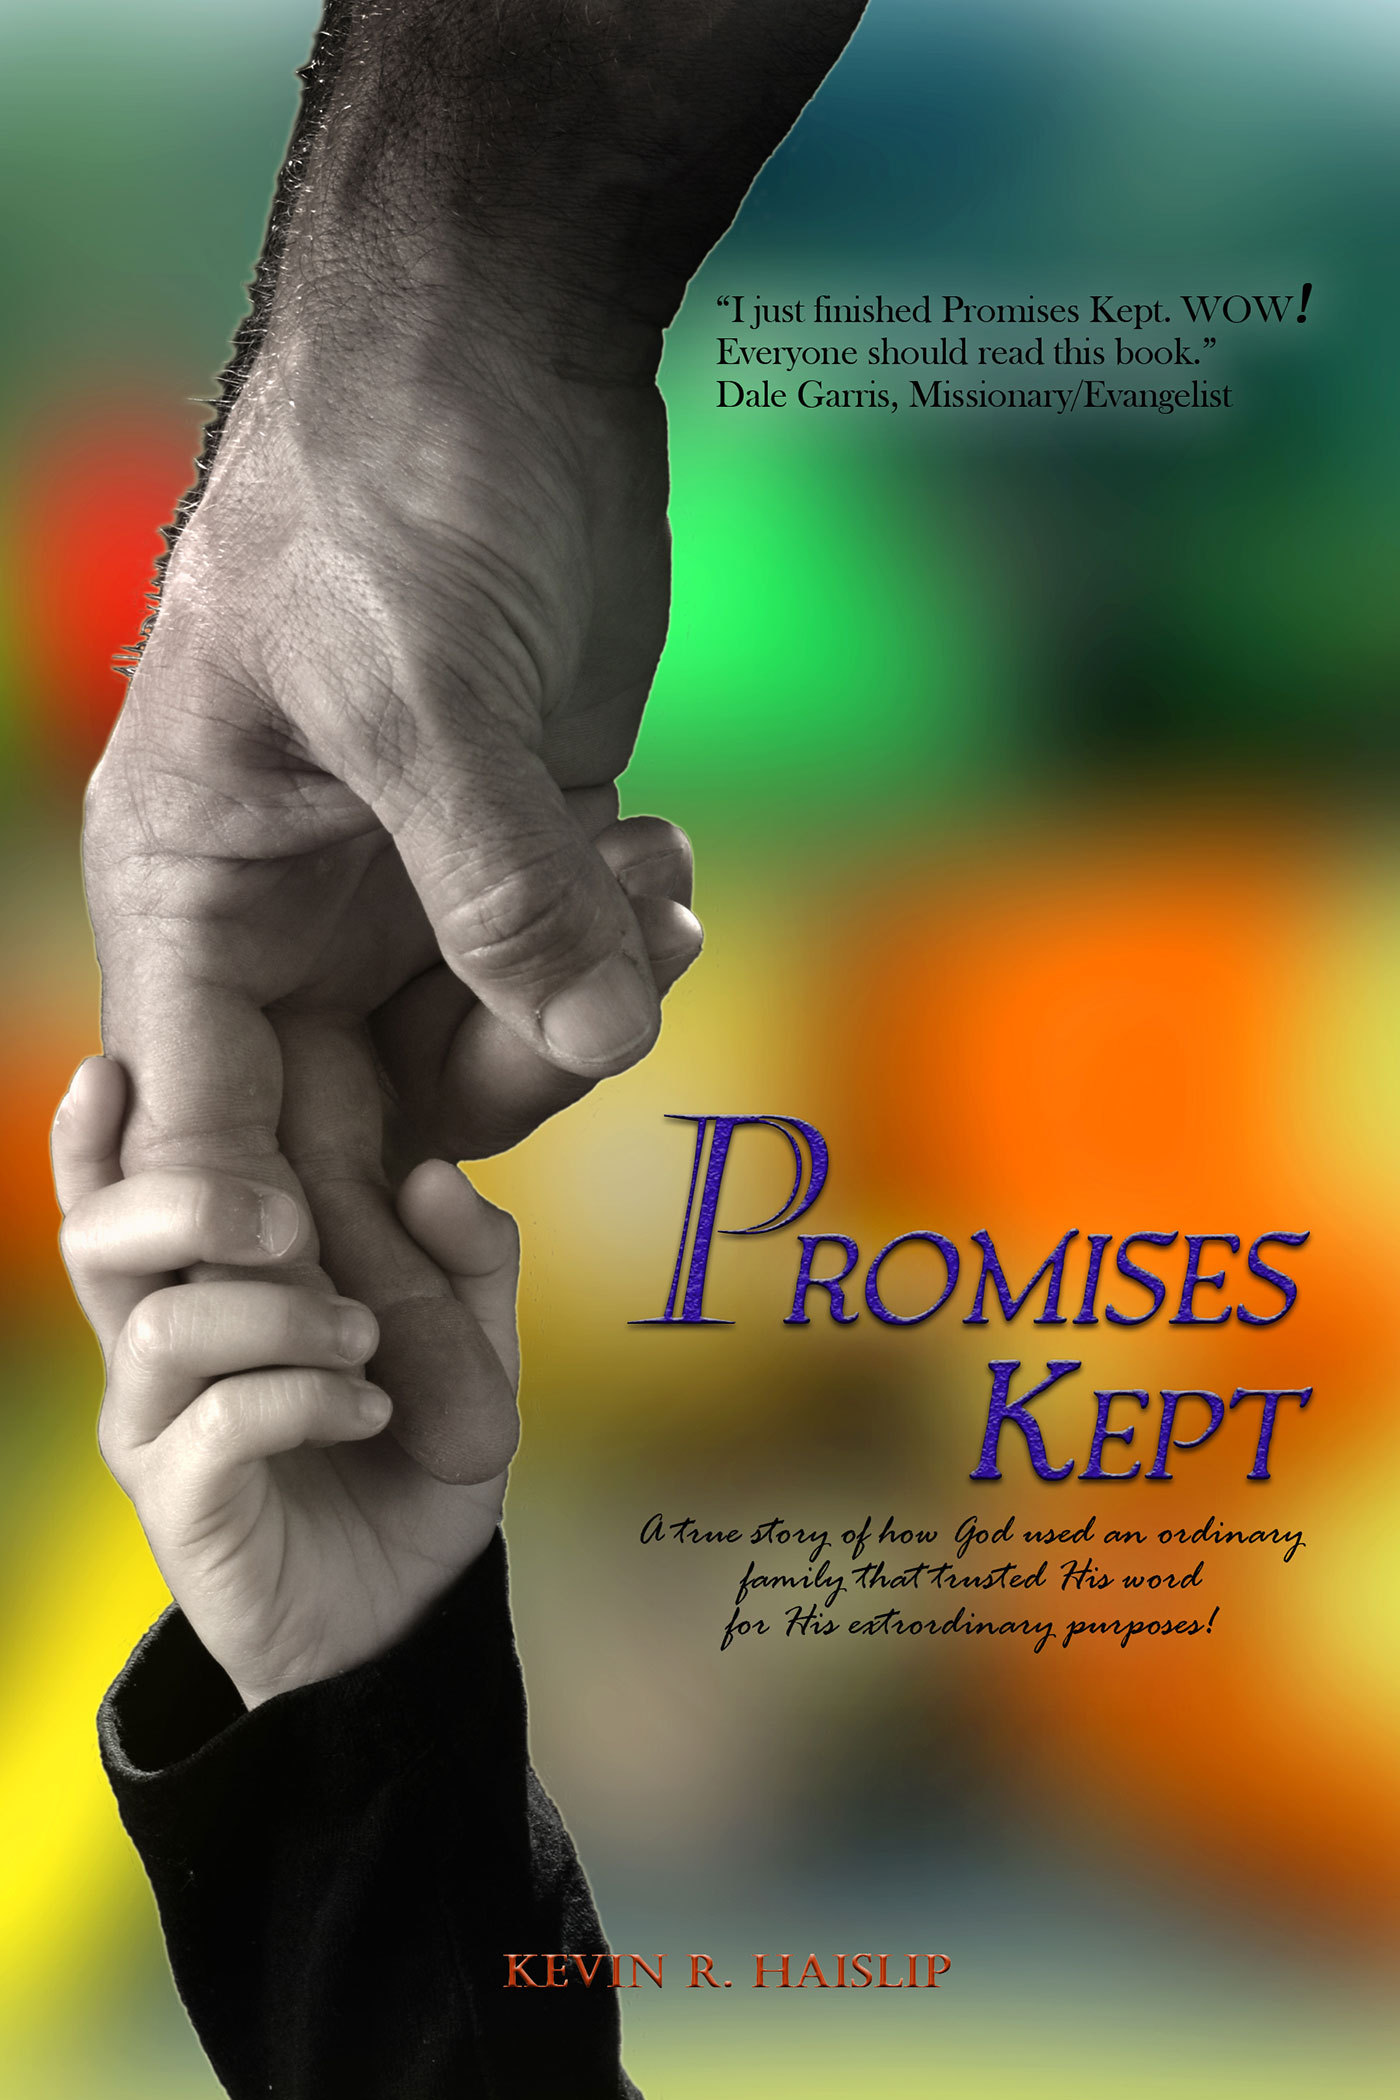 Promises Kept by Kevin Haislip